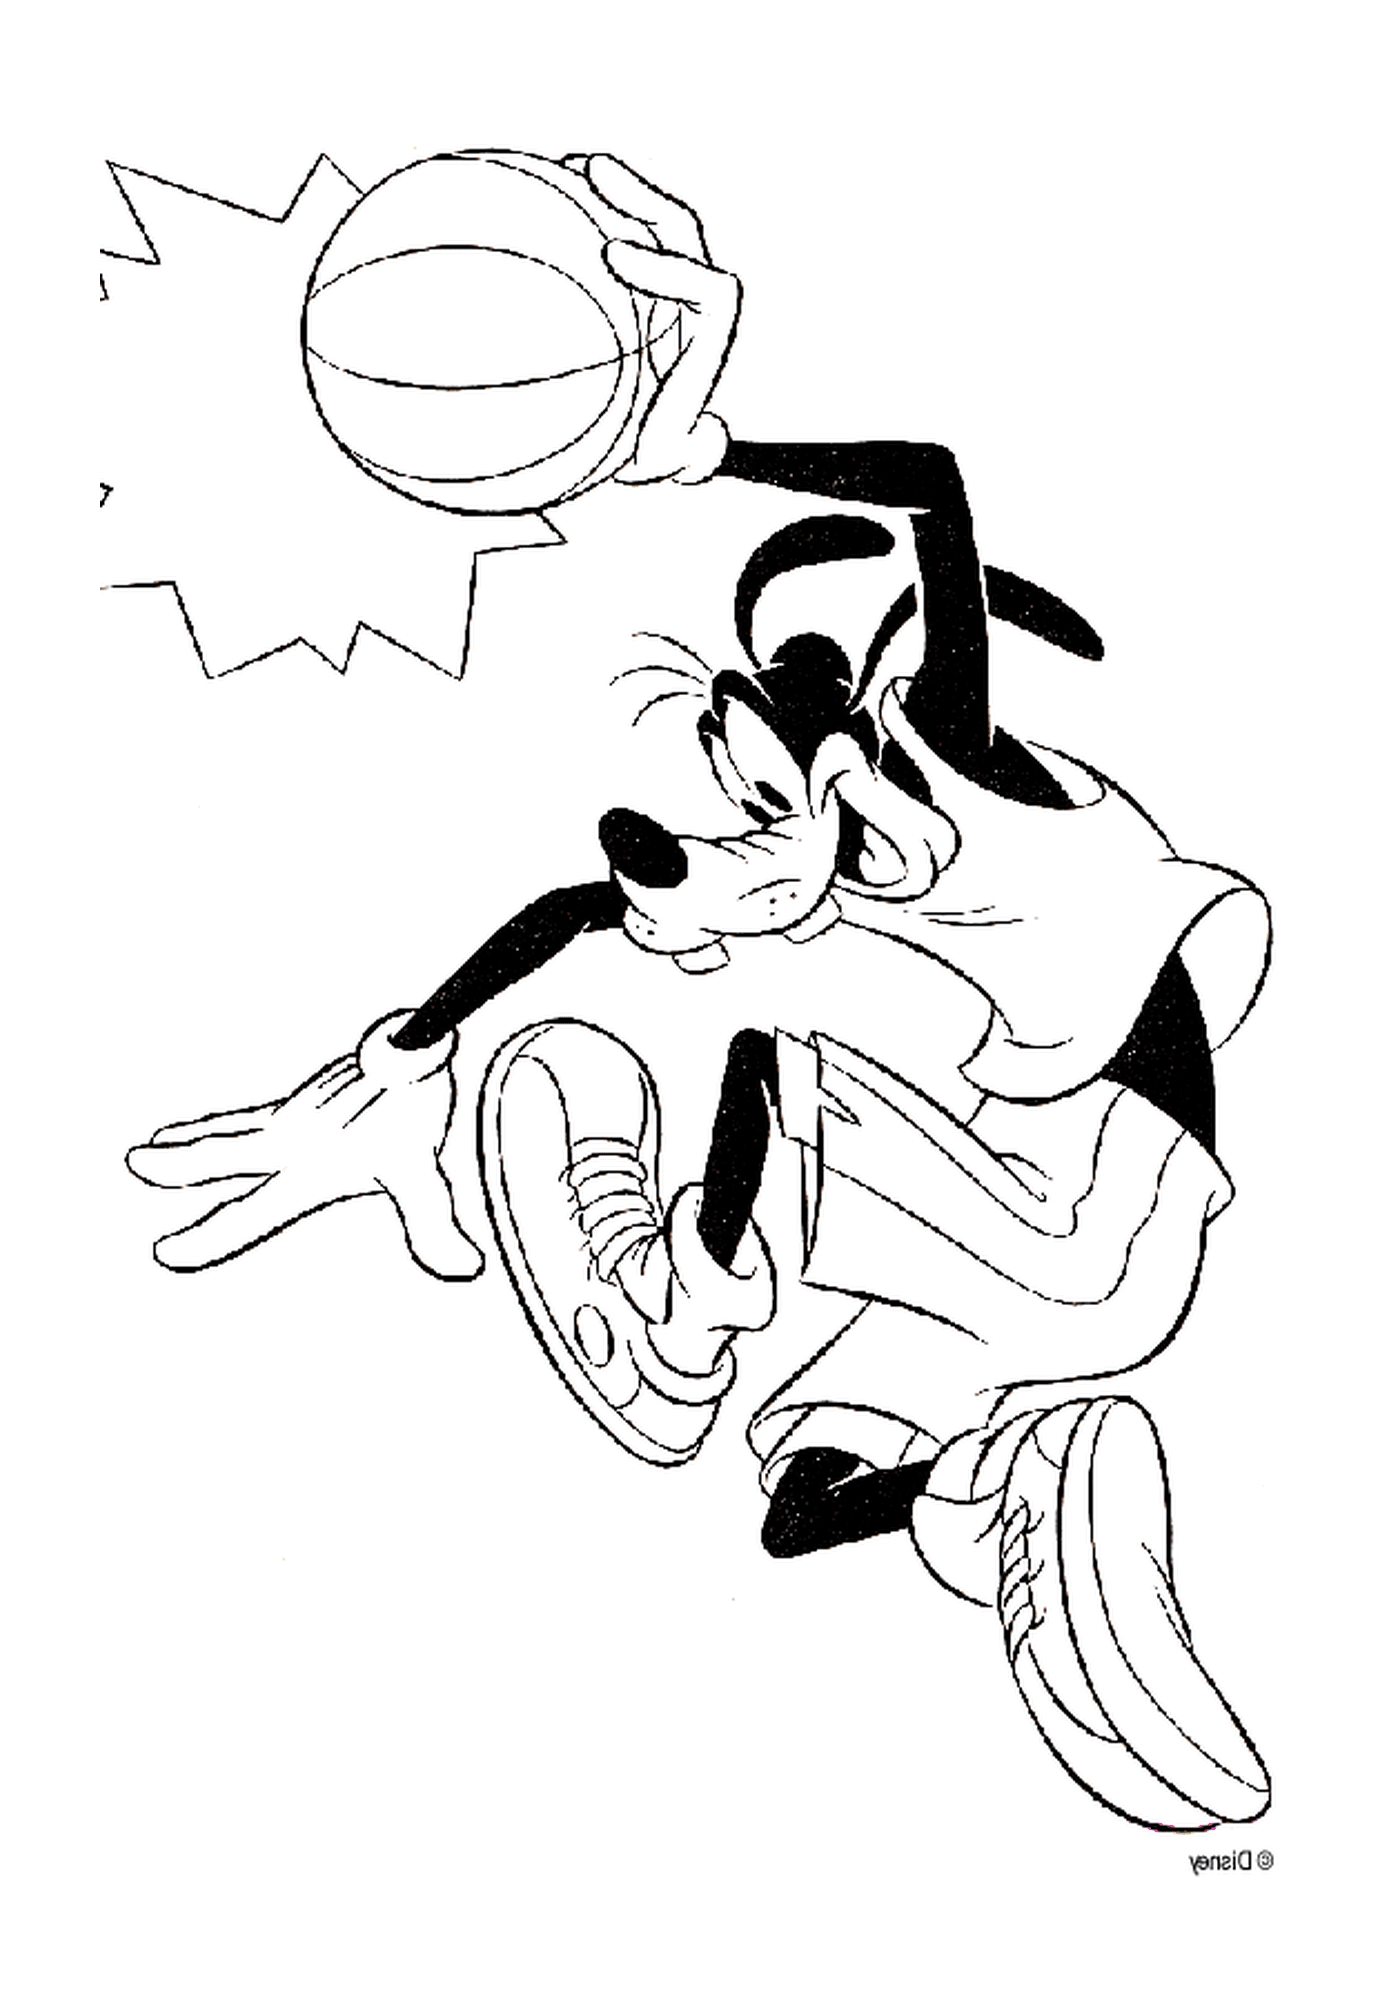  Dingo joga basquete com uma bola 